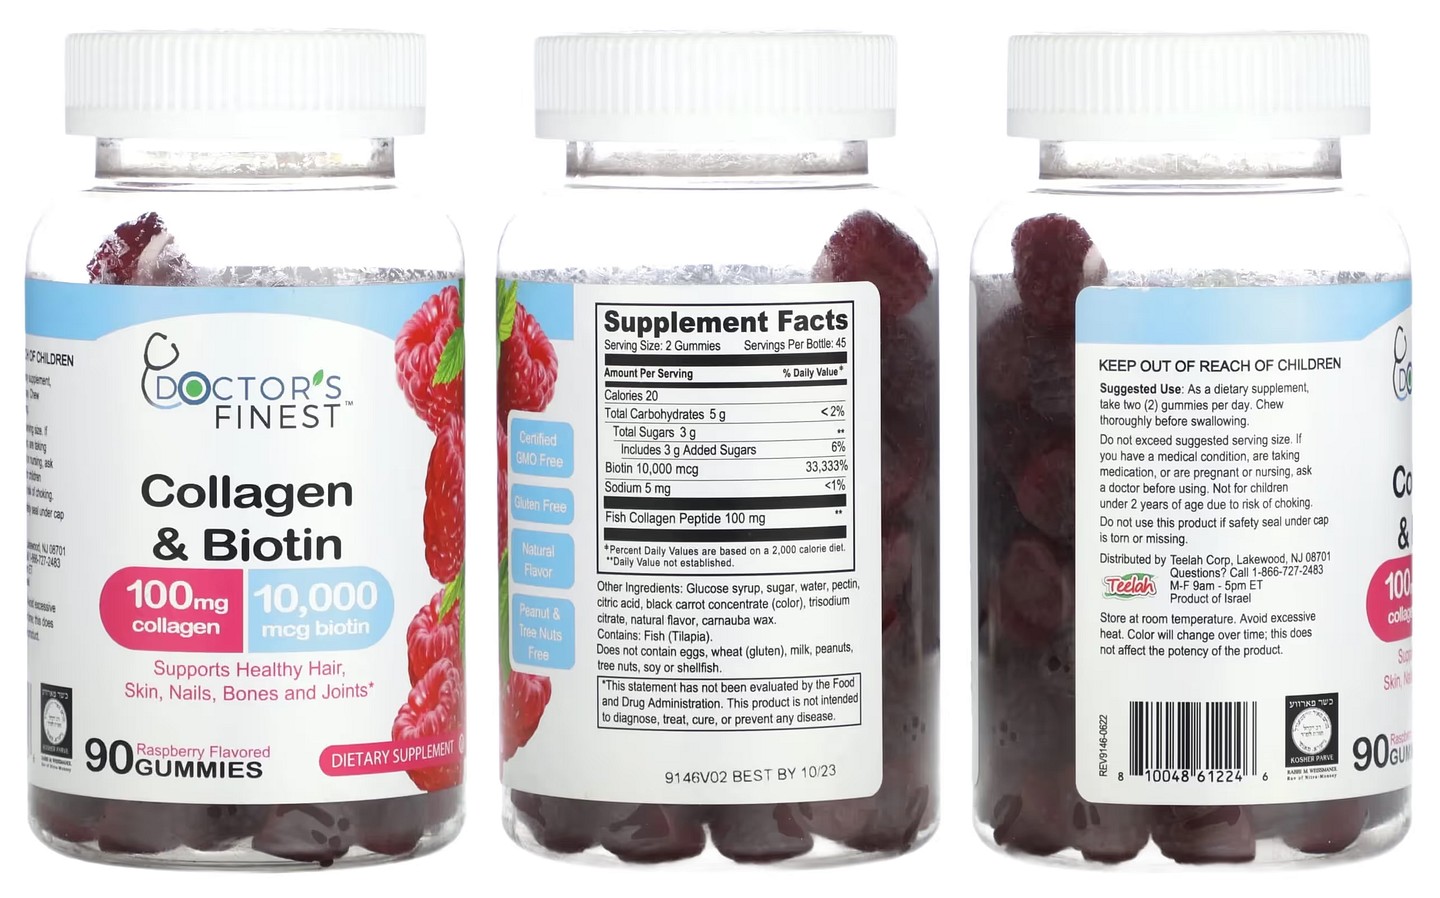 Doctor's Finest, Collagen & Biotin packaging